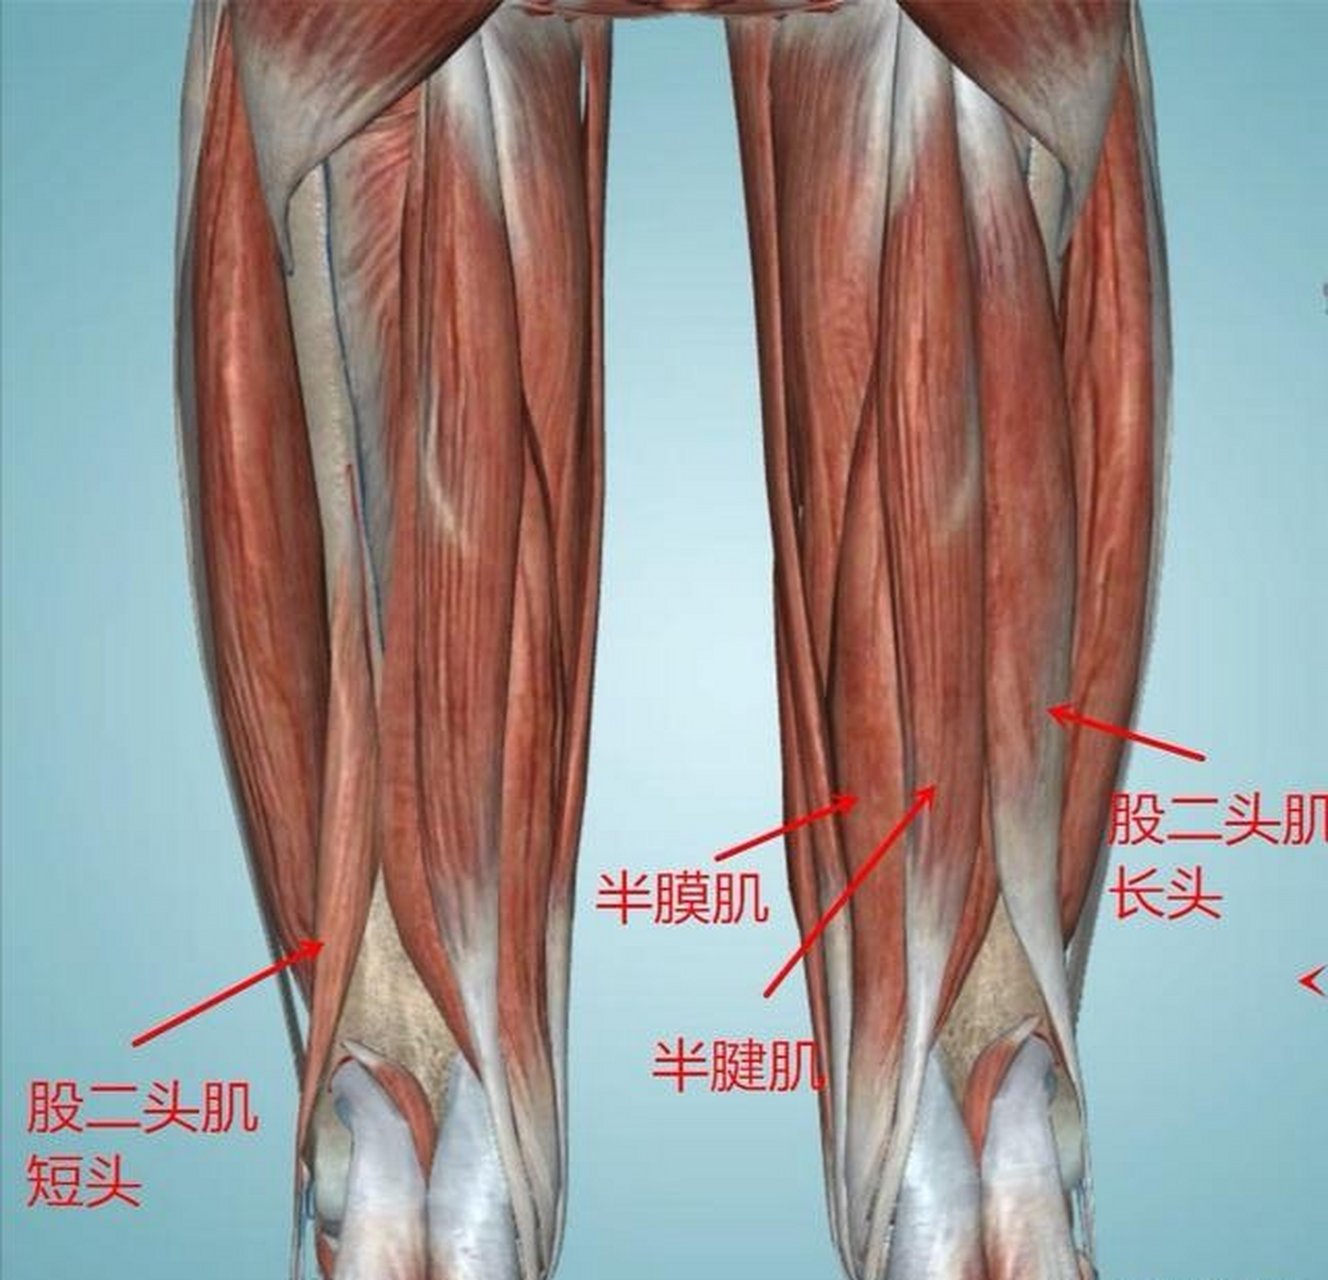 很多人会把腿部后侧的肌肉称作为股二头肌,其实这种叫法是不对的,股二